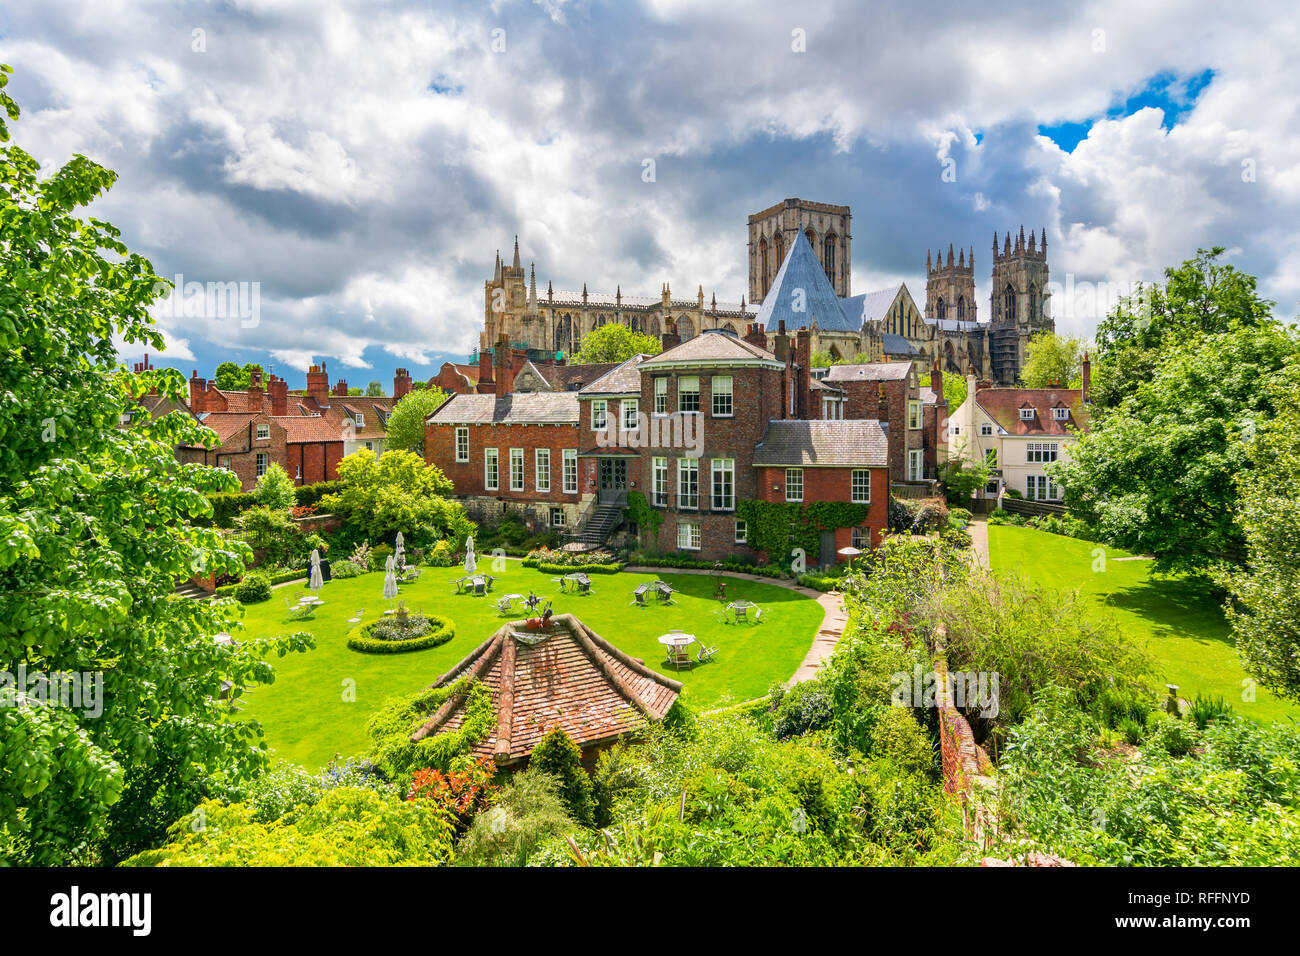 York, Angleterre, Royaume-Uni : la cathédrale de York, l'un des plus importants du genre en Europe du Nord Banque D'Images